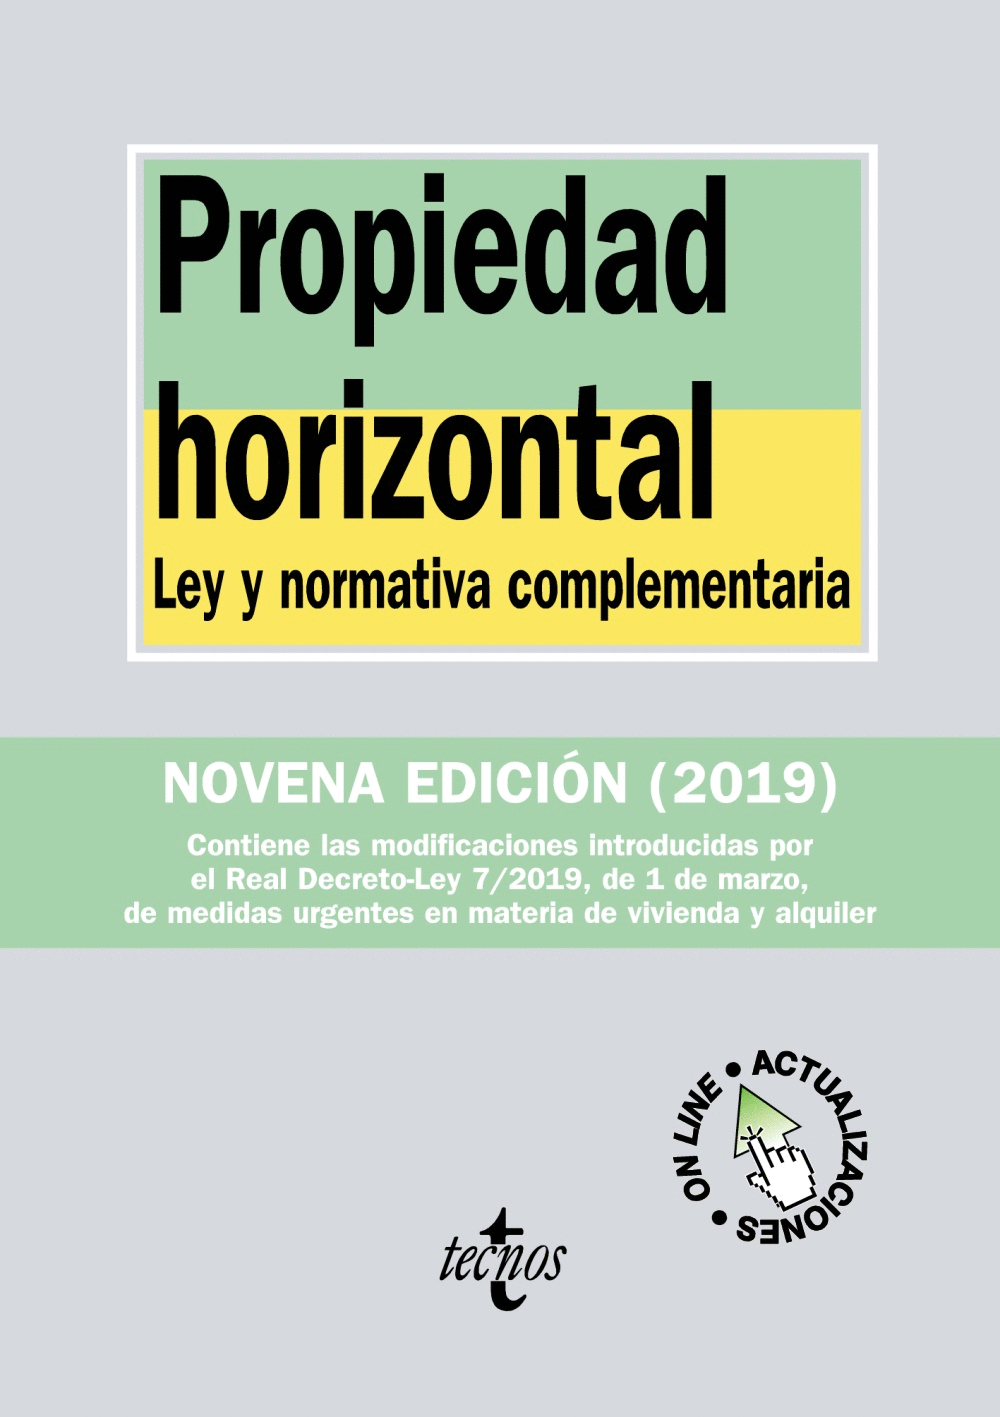 PROPIEDAD HORIZONTAL 415